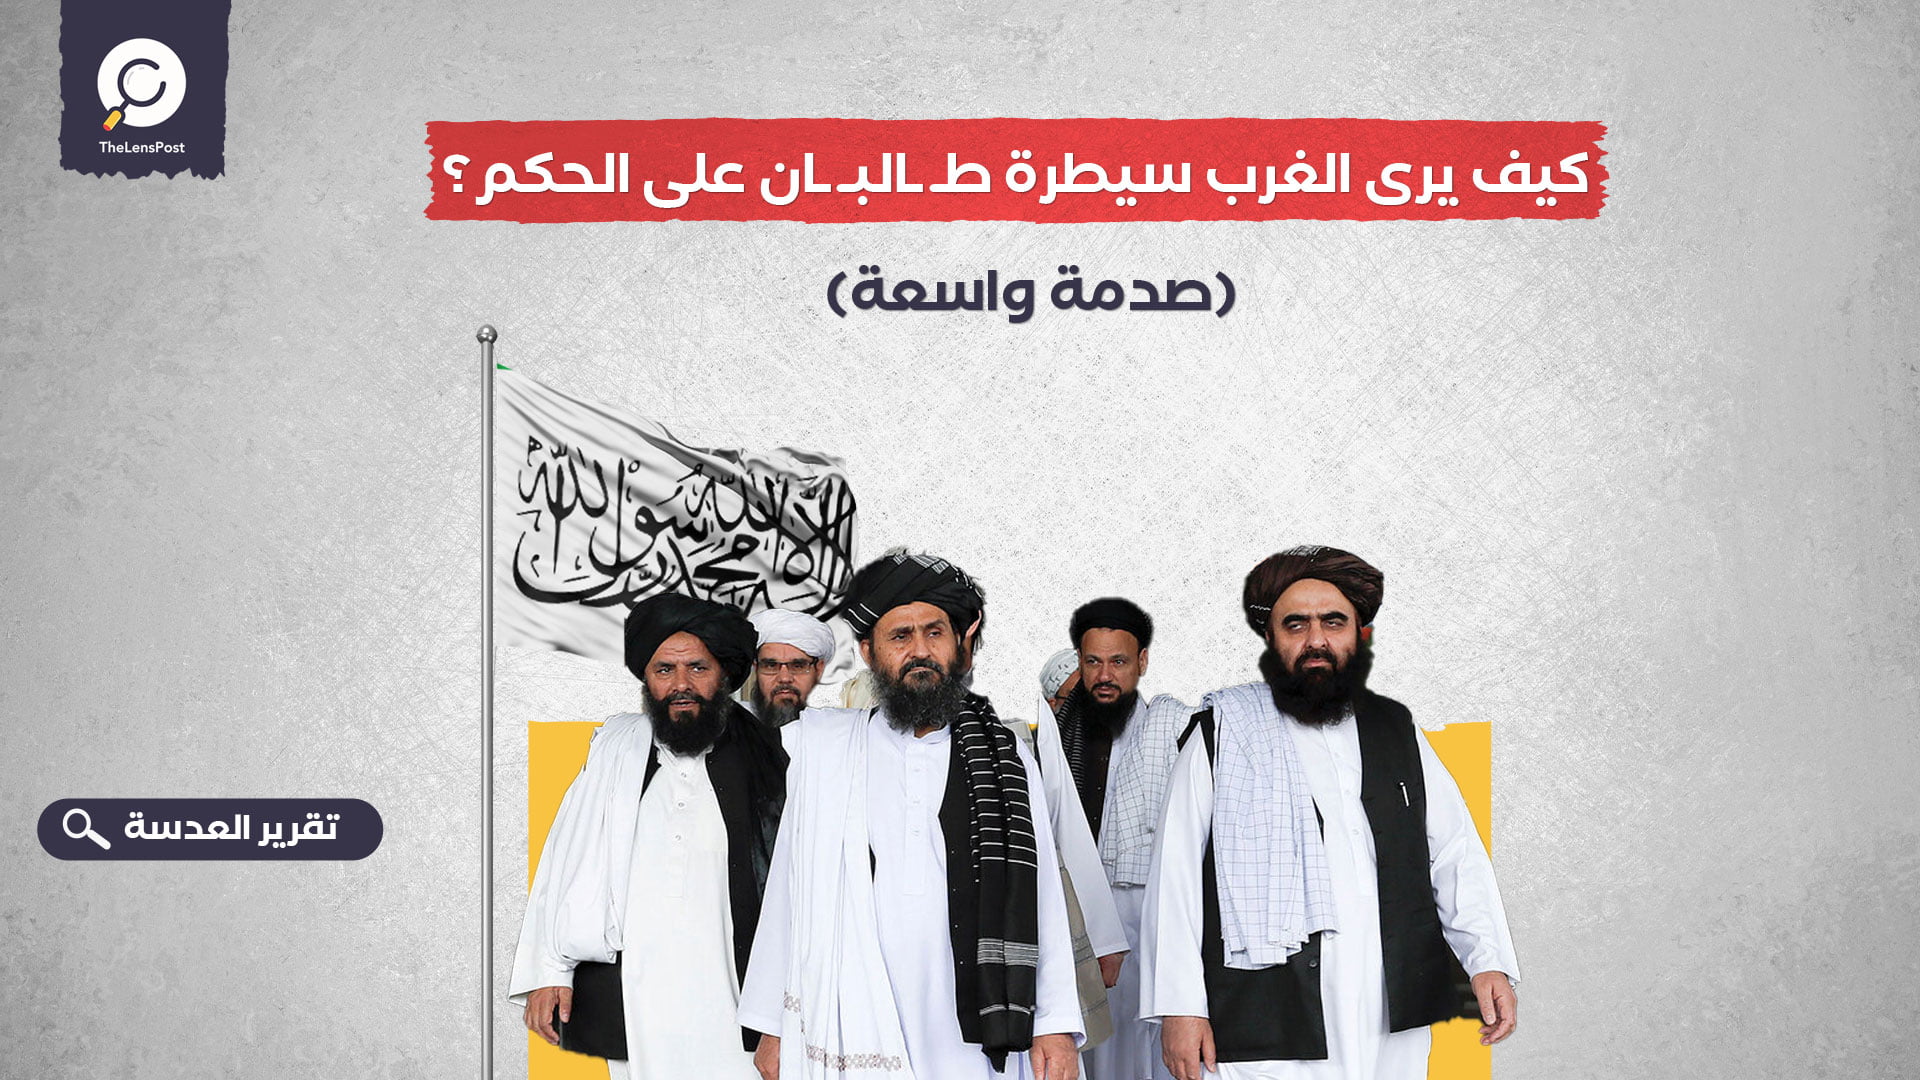 كيف يرى الغرب سيطرة طالبان على الحكم؟